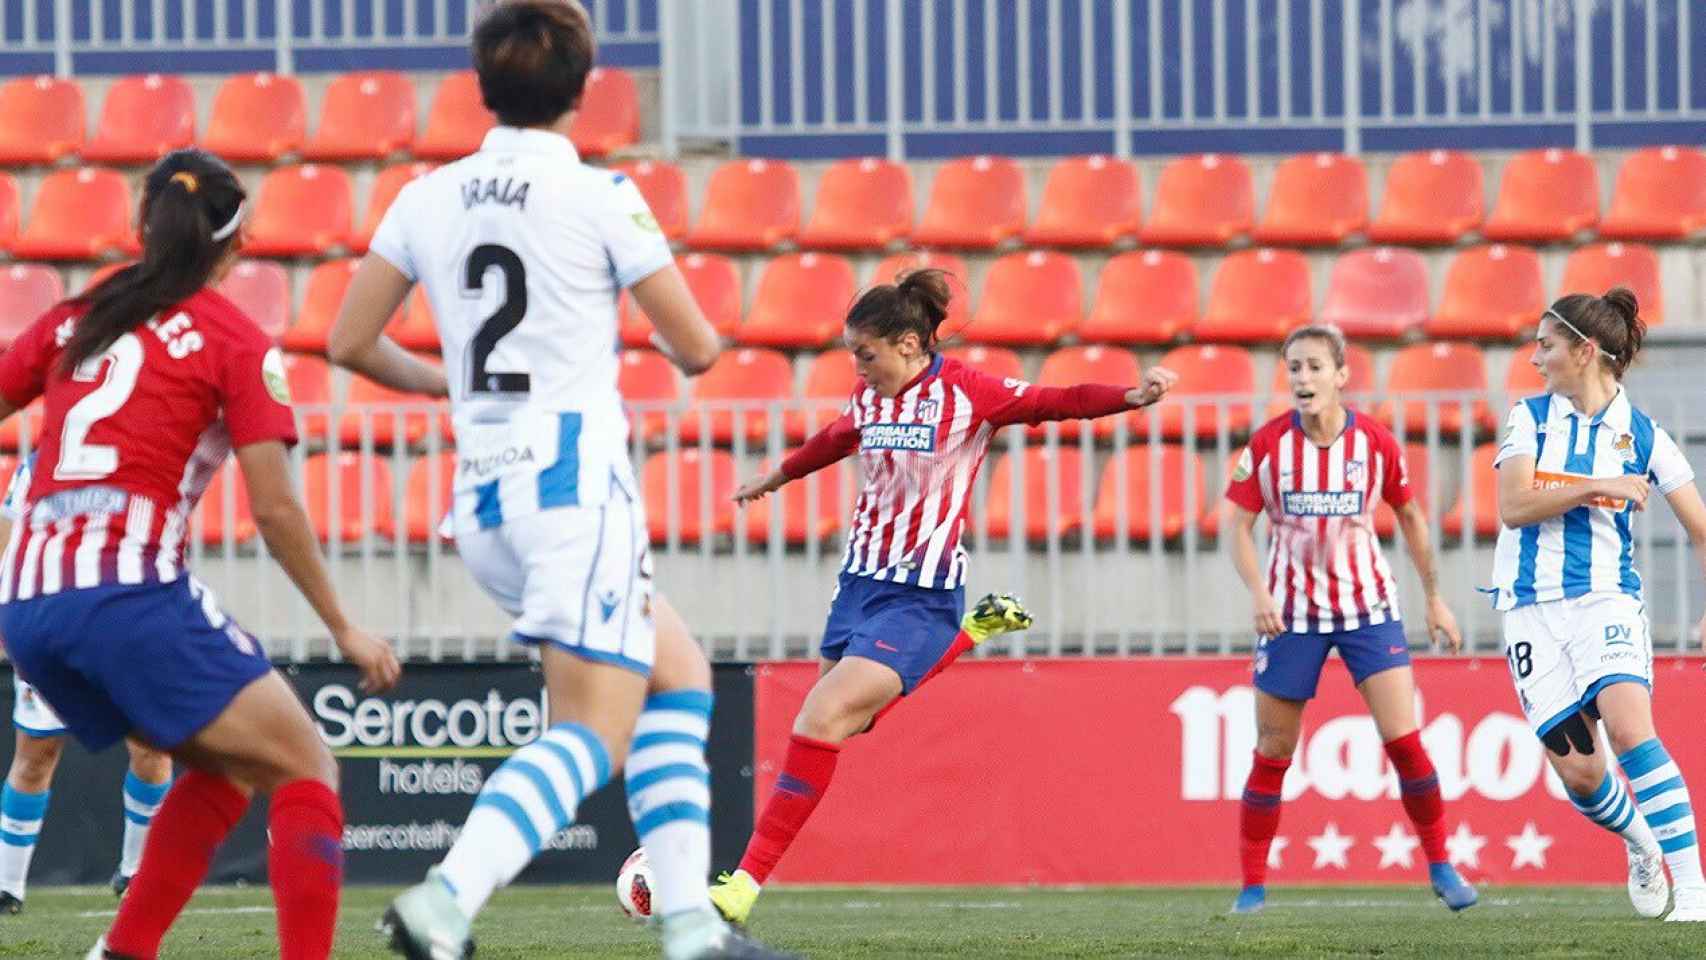 El encuentro de Liga entre Atlético de Madrid femenino y Real Sociedad